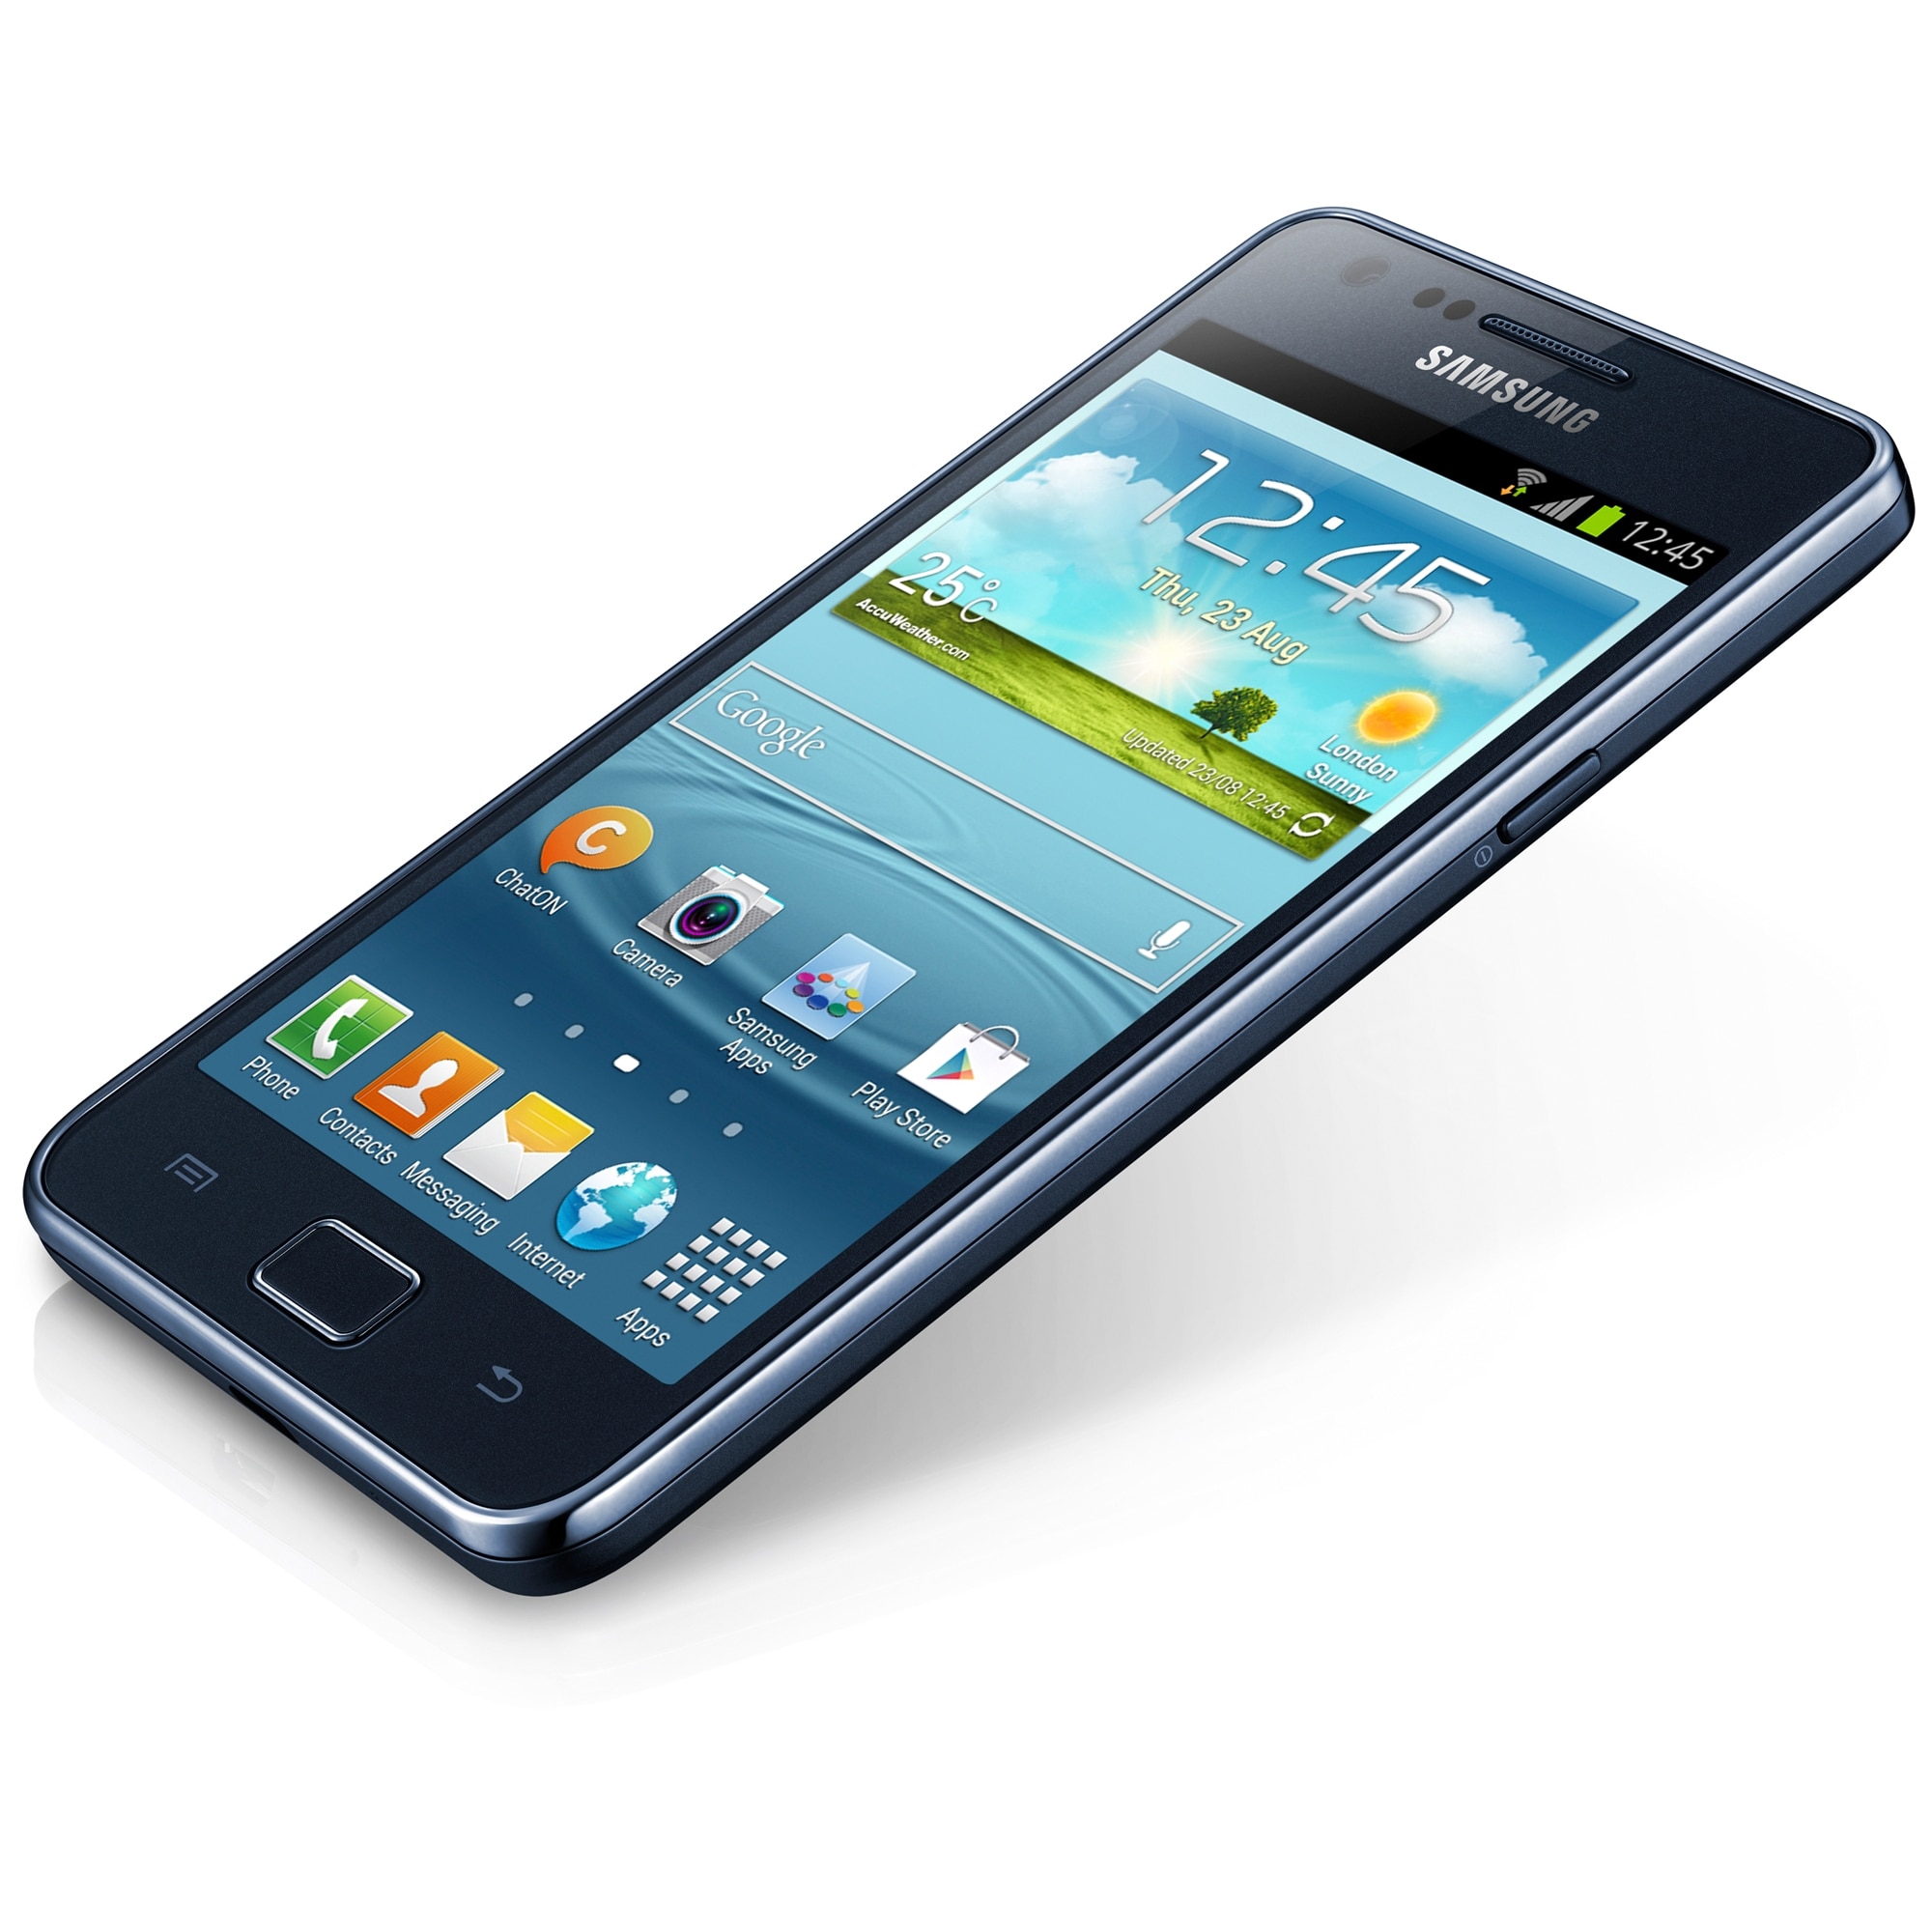 Samsung Galaxy 2